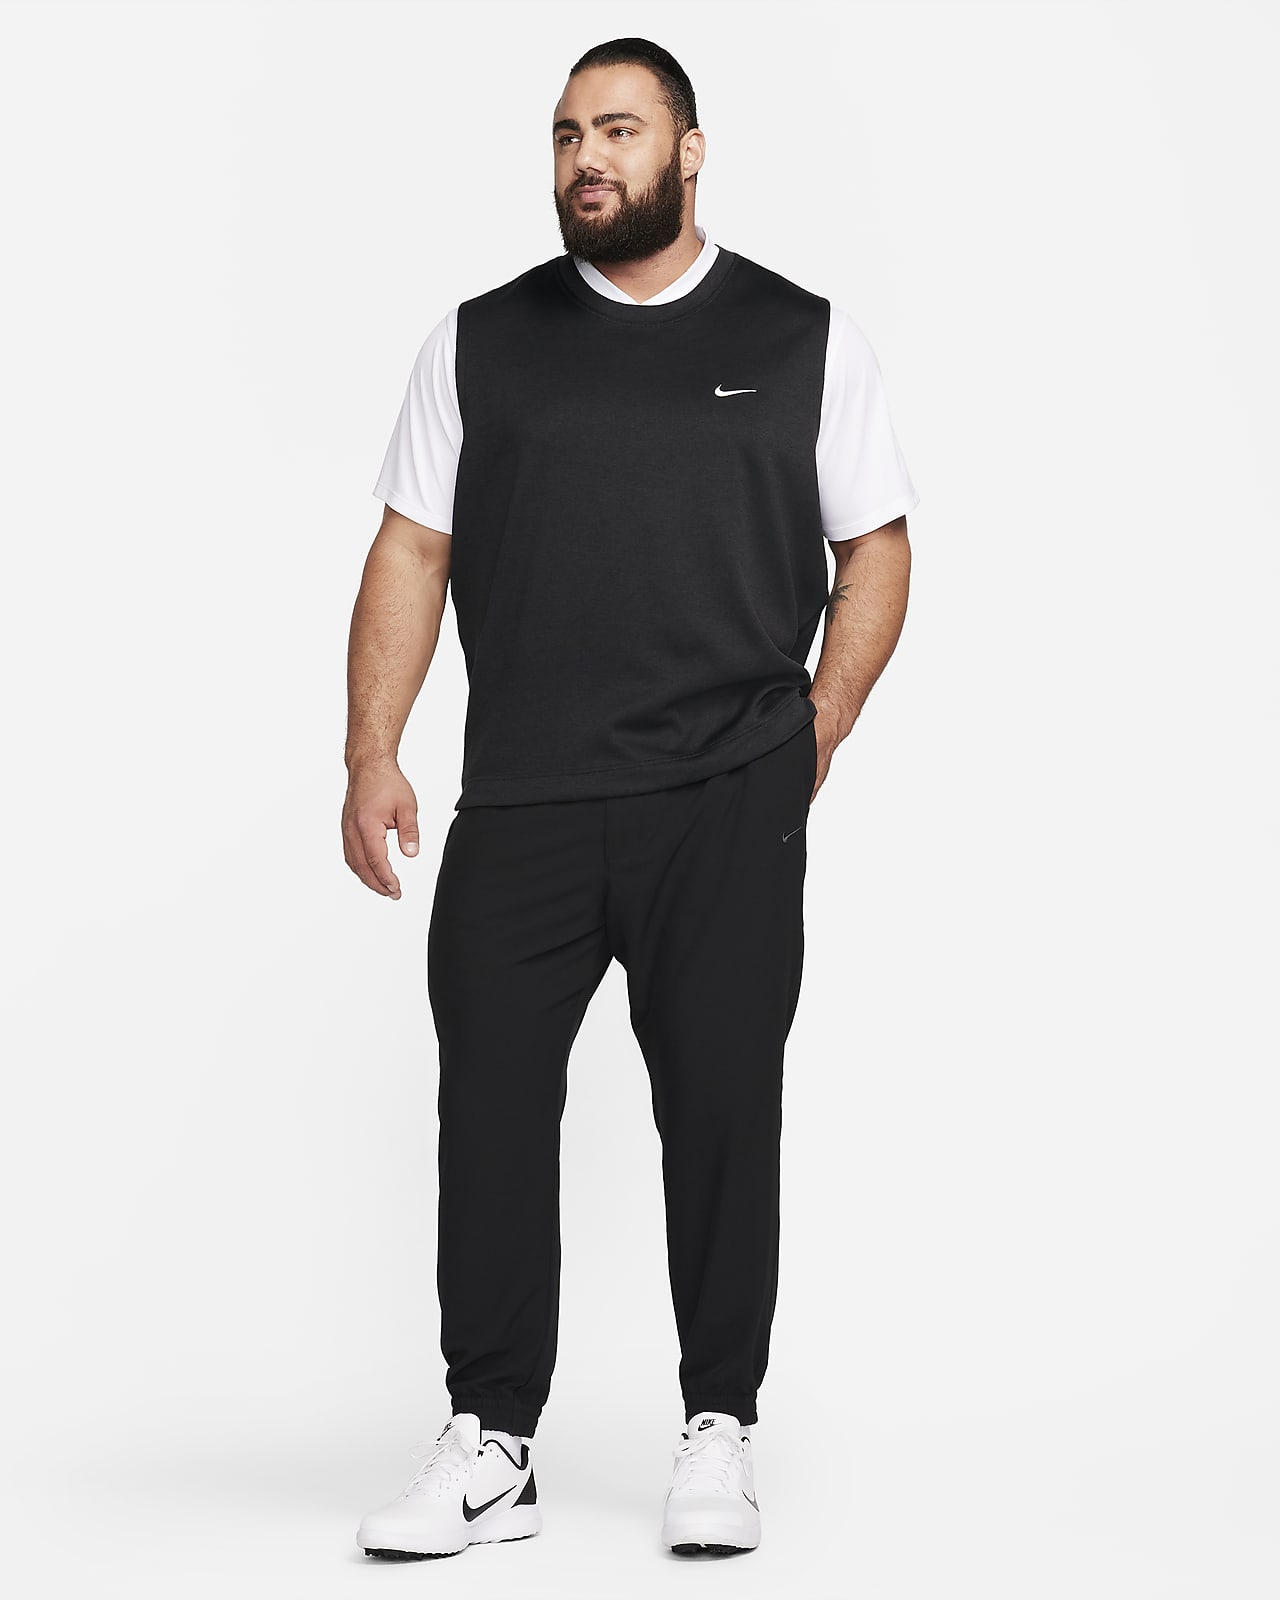 Nike Dri-FIT Tour Men's Golf Vest.